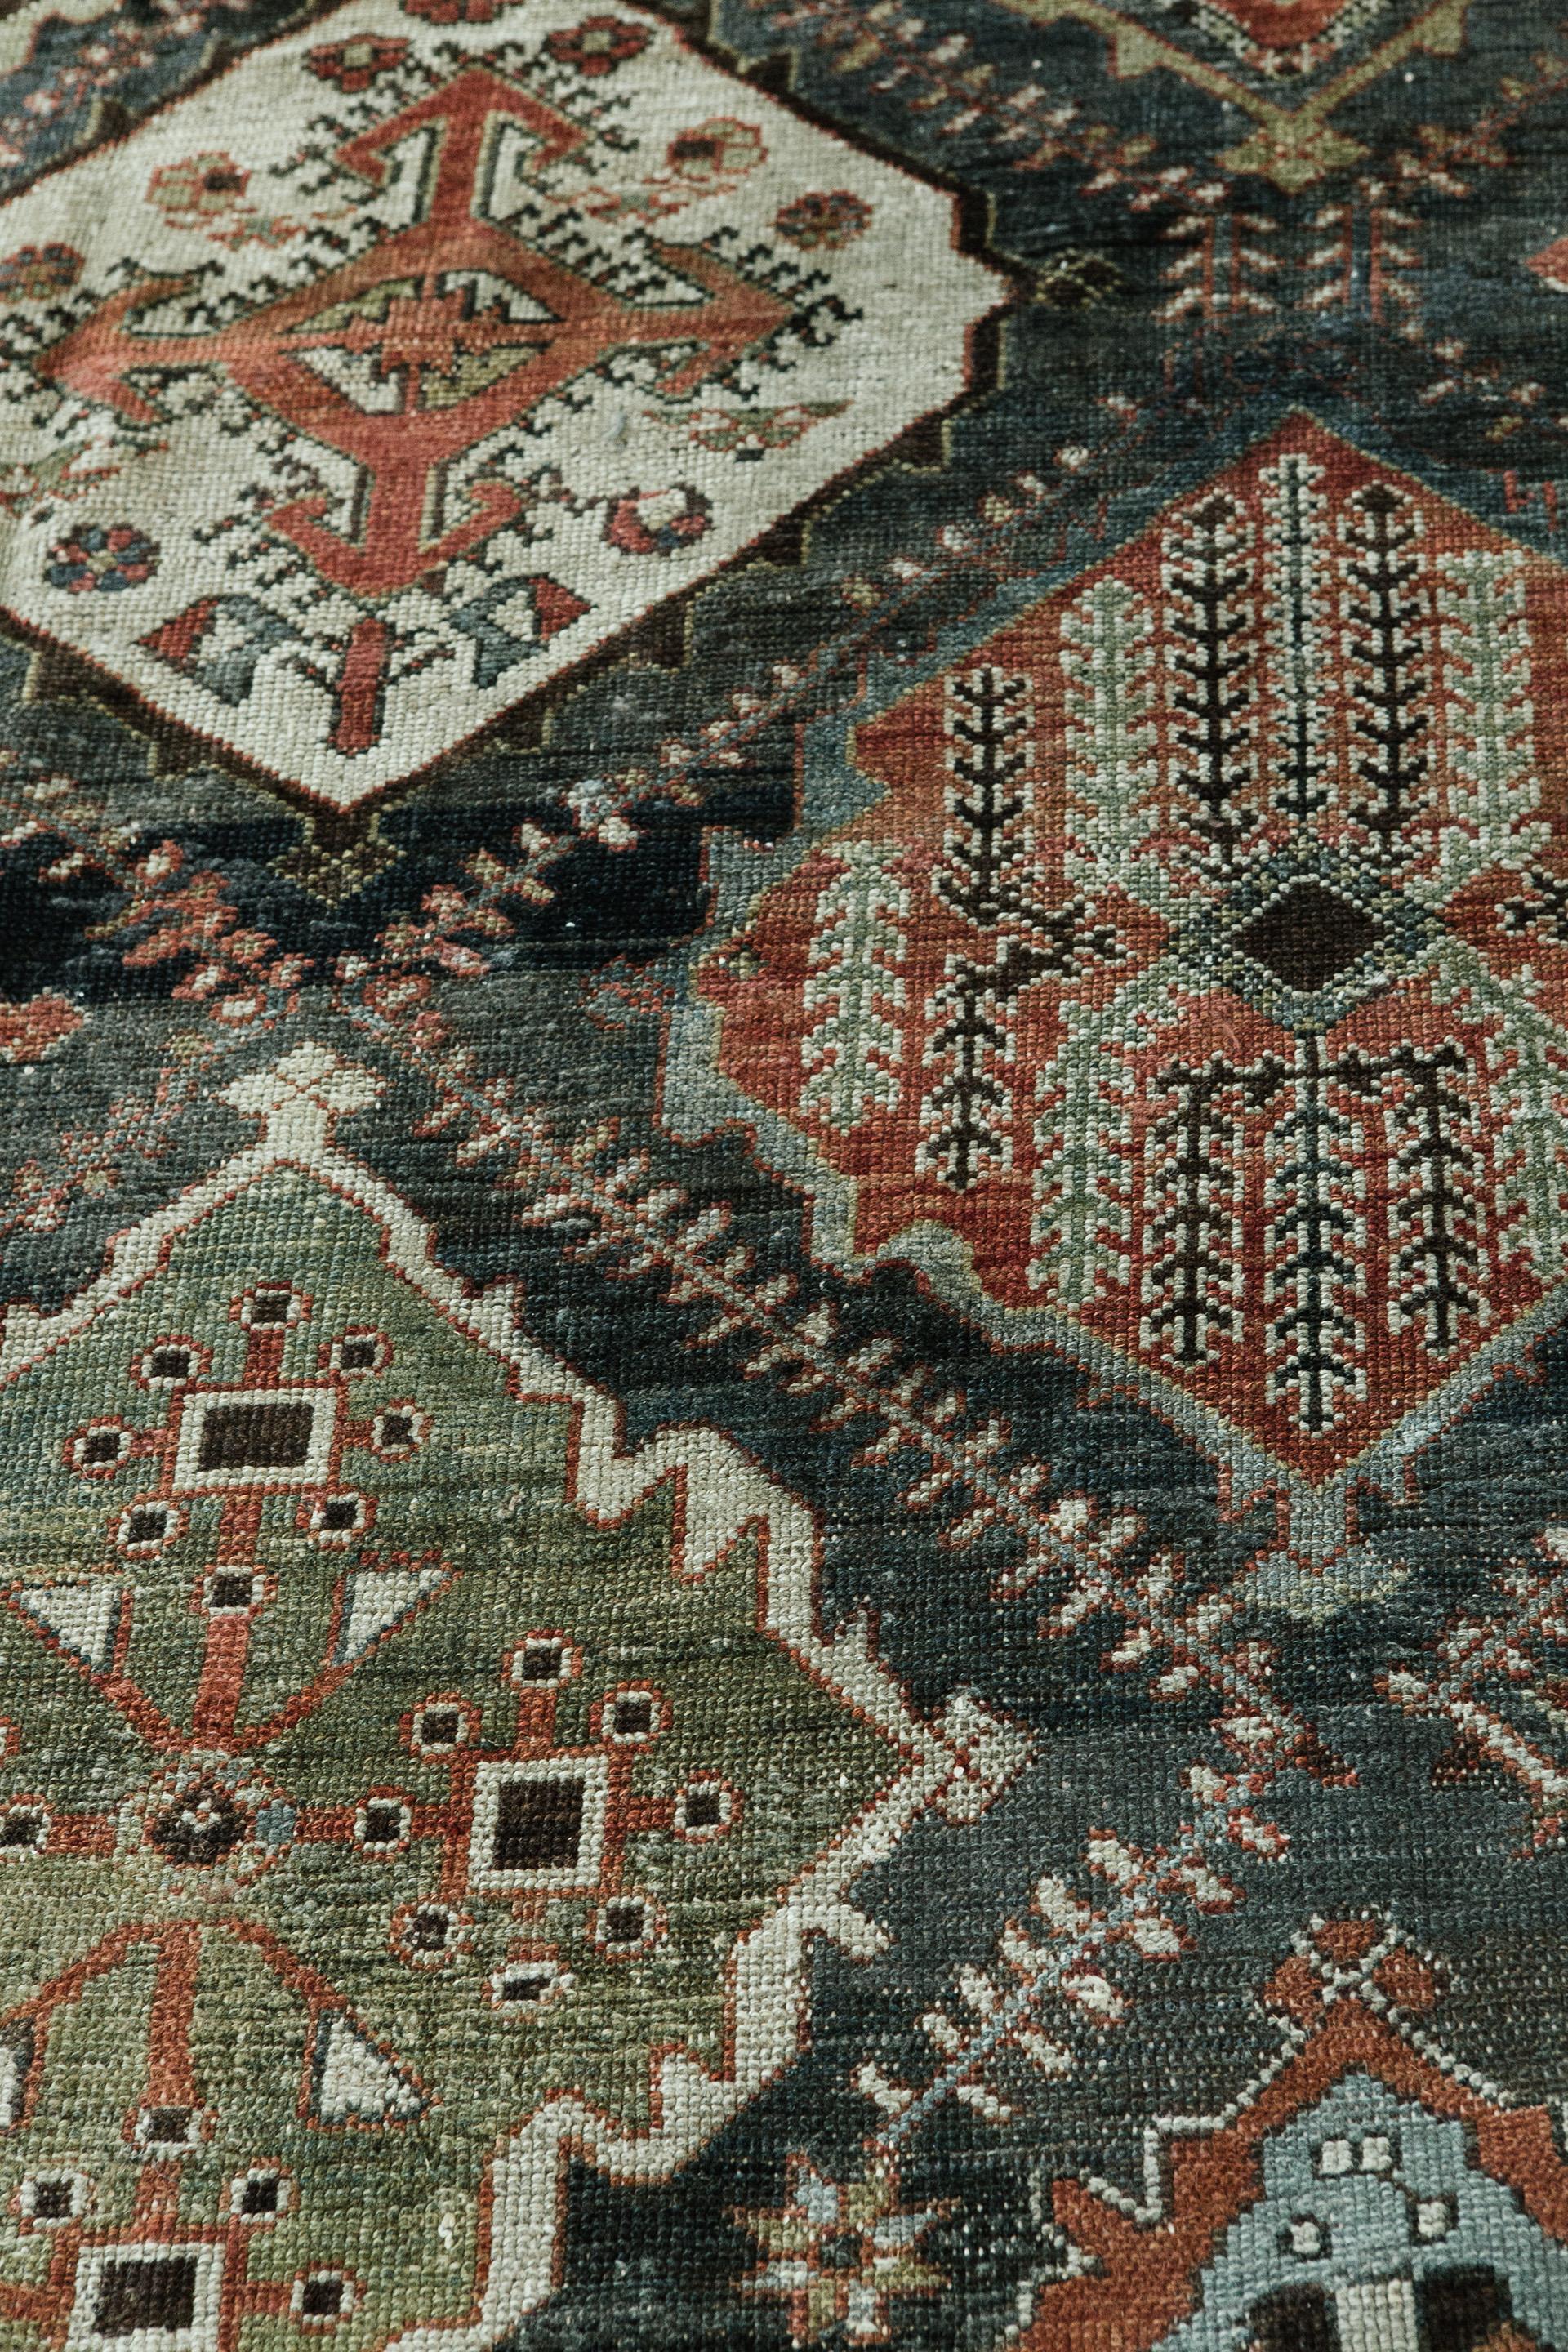 Cet ancien tapis persan Bakhitari a été conçu sur une grande échelle de stylisations géométriques aux tons profonds. Ces tapis ont été réalisés par des tisserands hautement qualifiés et ont nécessité environ six ans de travail dans les montagnes du